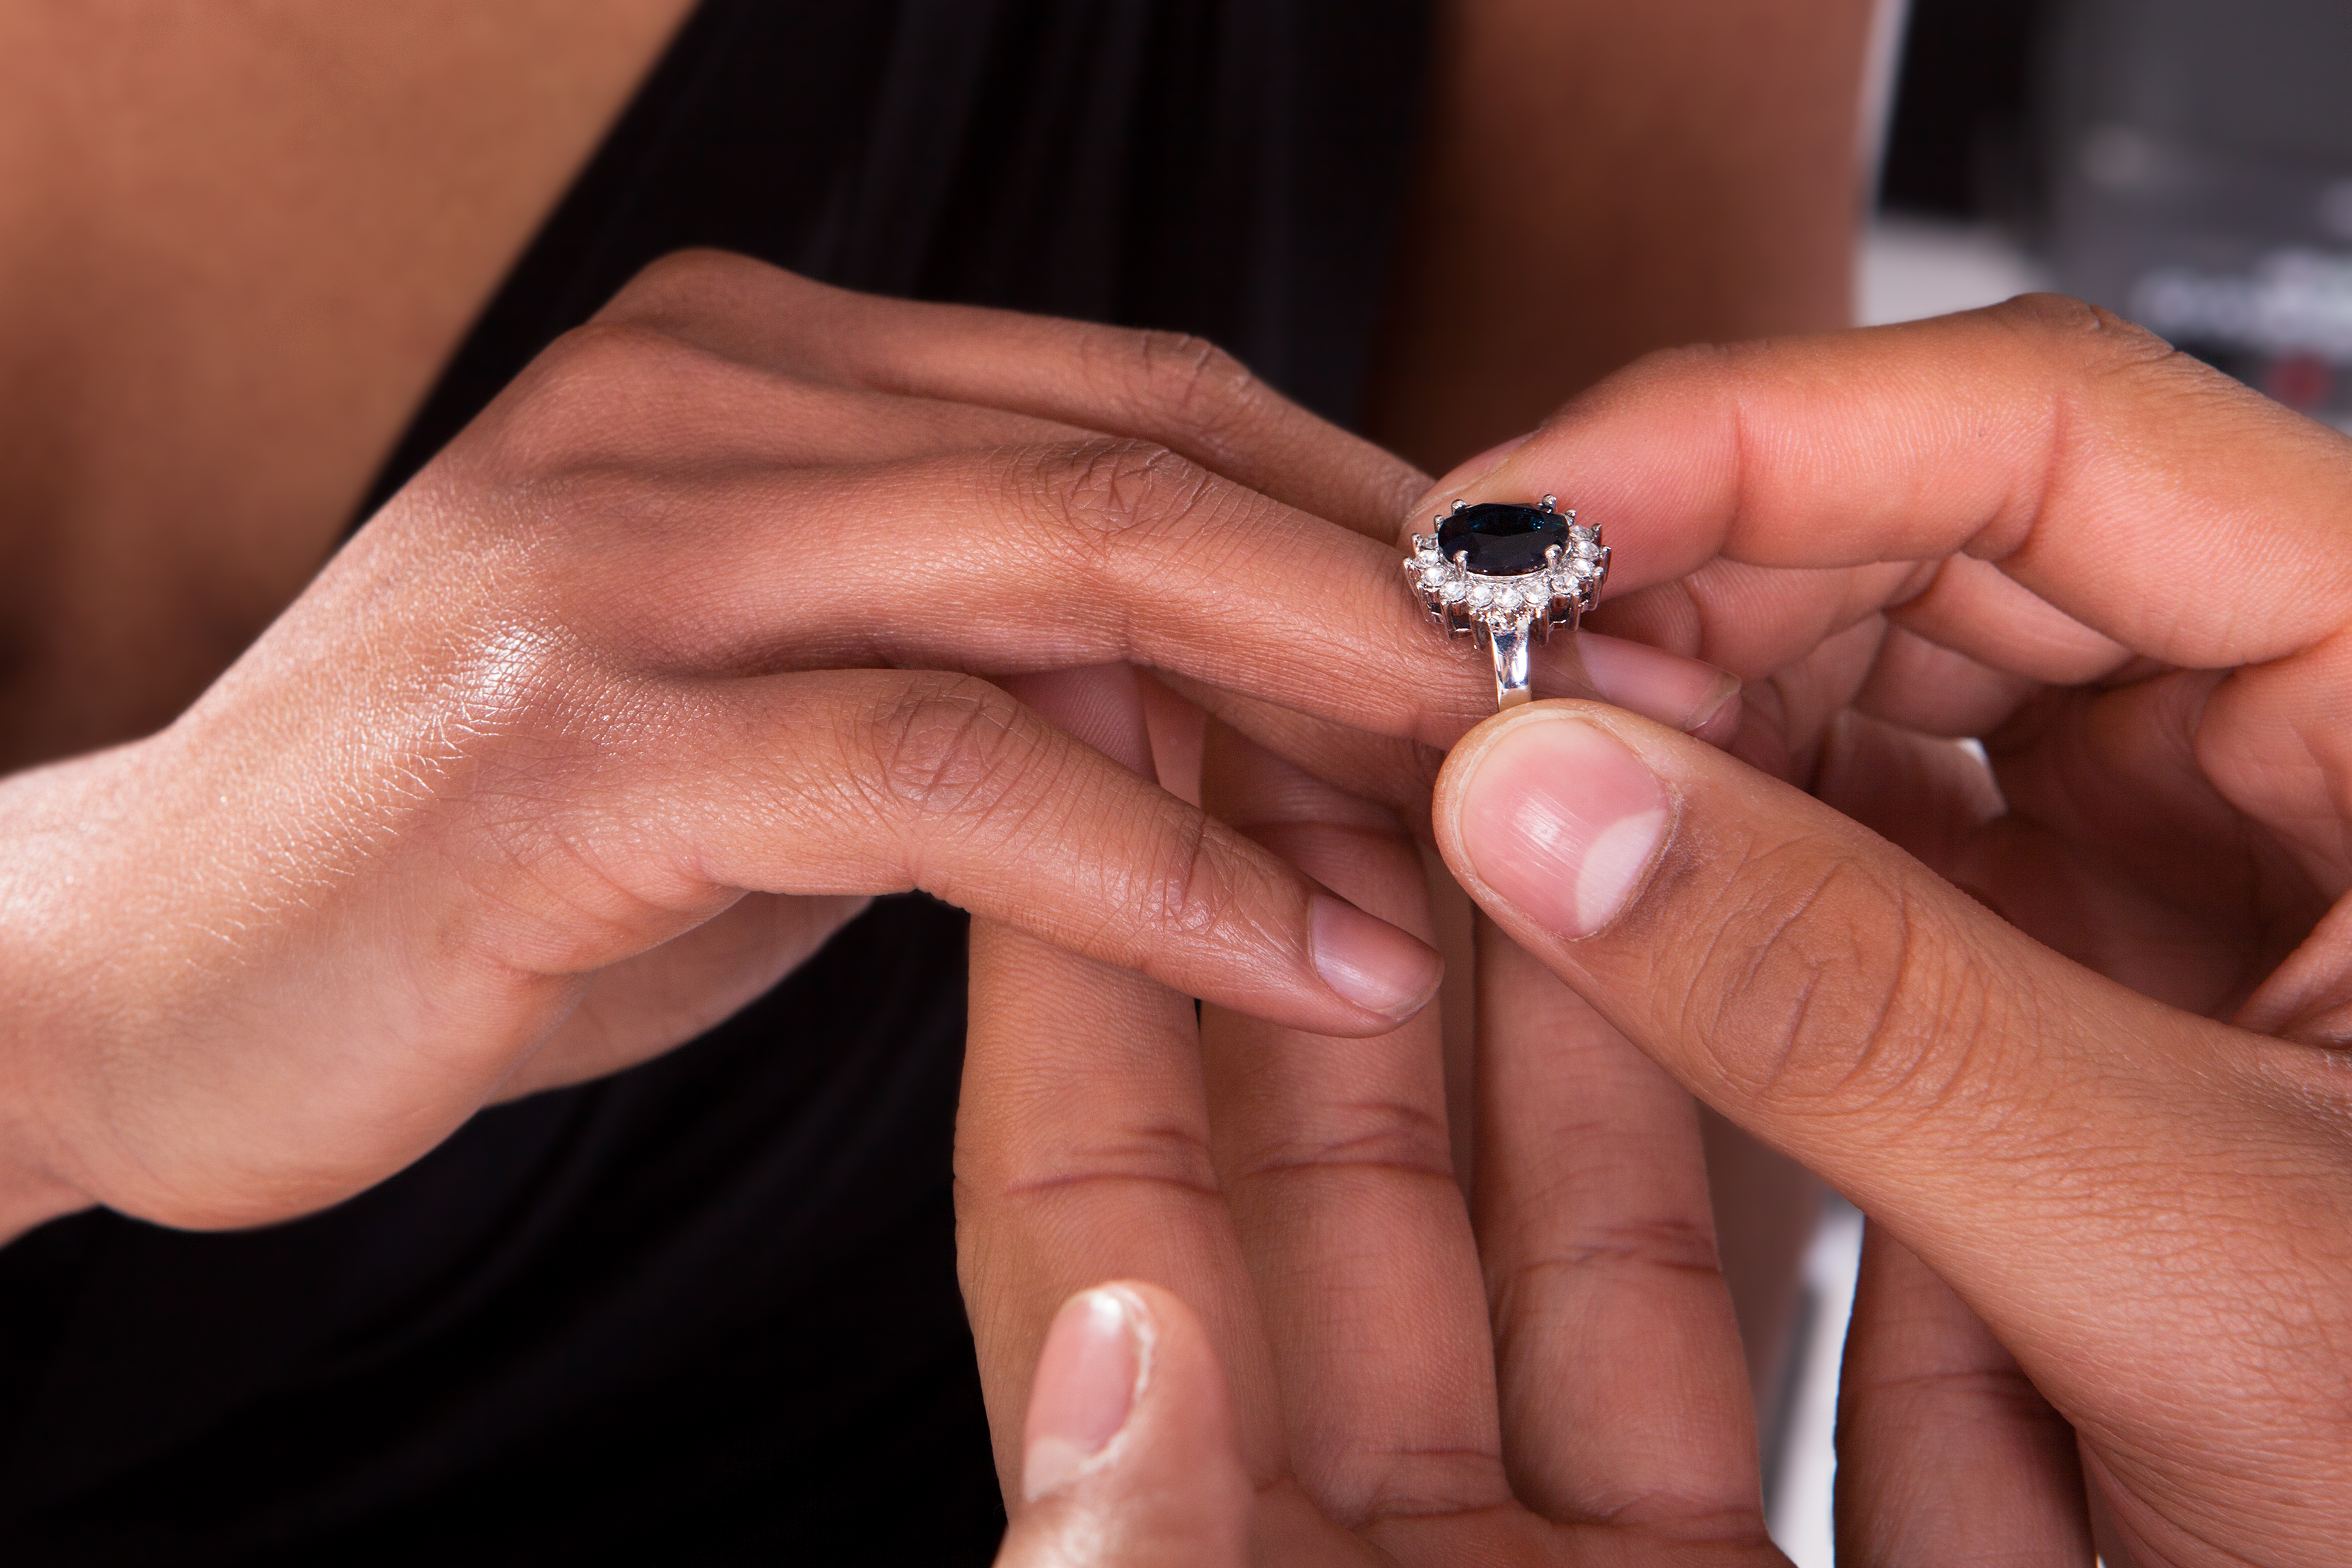 Ein Paar tauscht Ringe aus | Quelle: Shutterstock